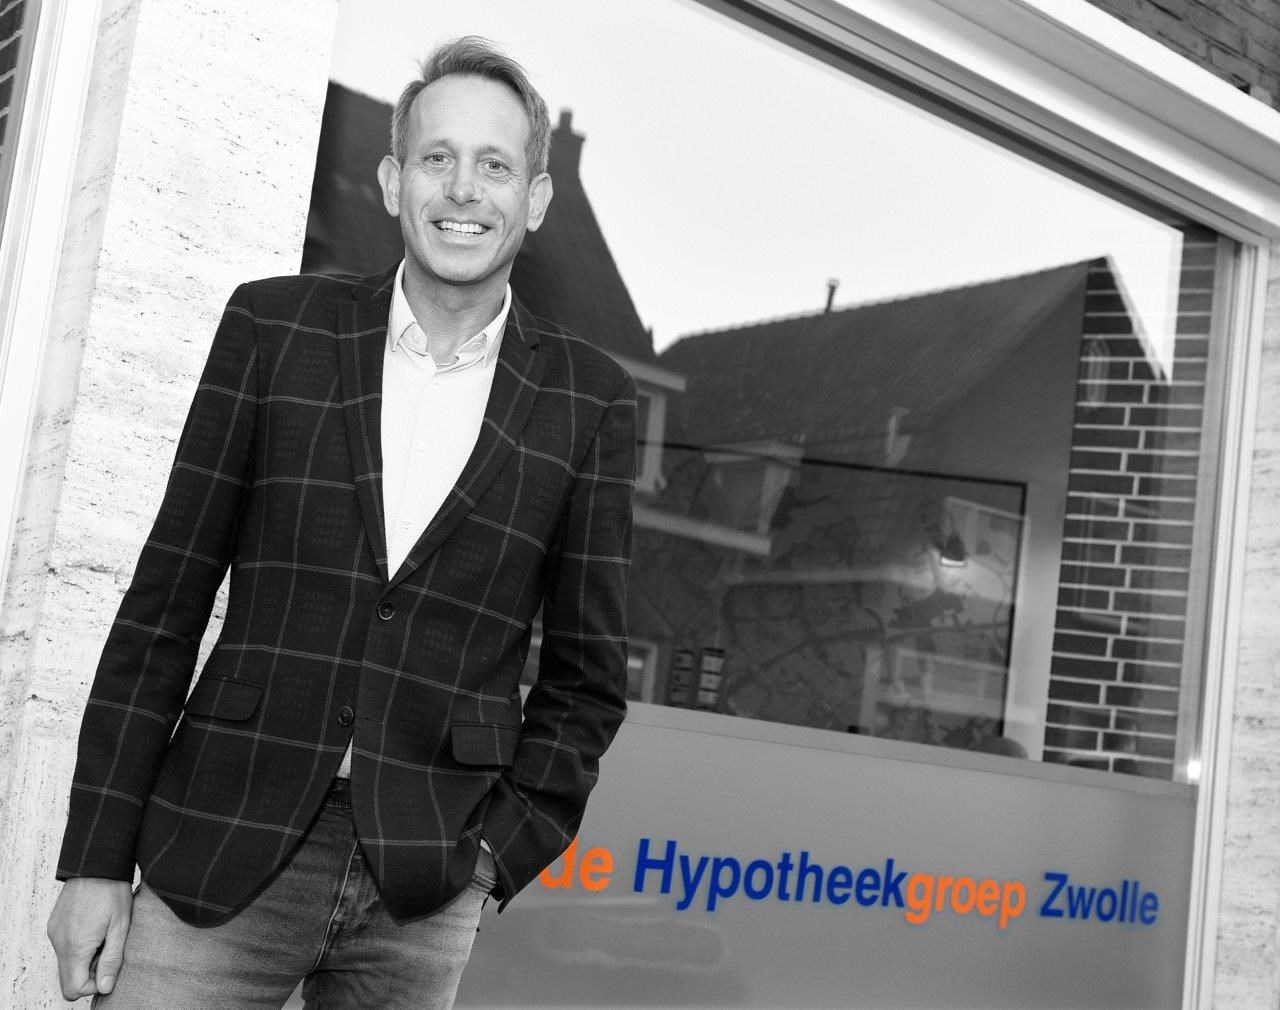 de Hypotheekgroep Zwolle